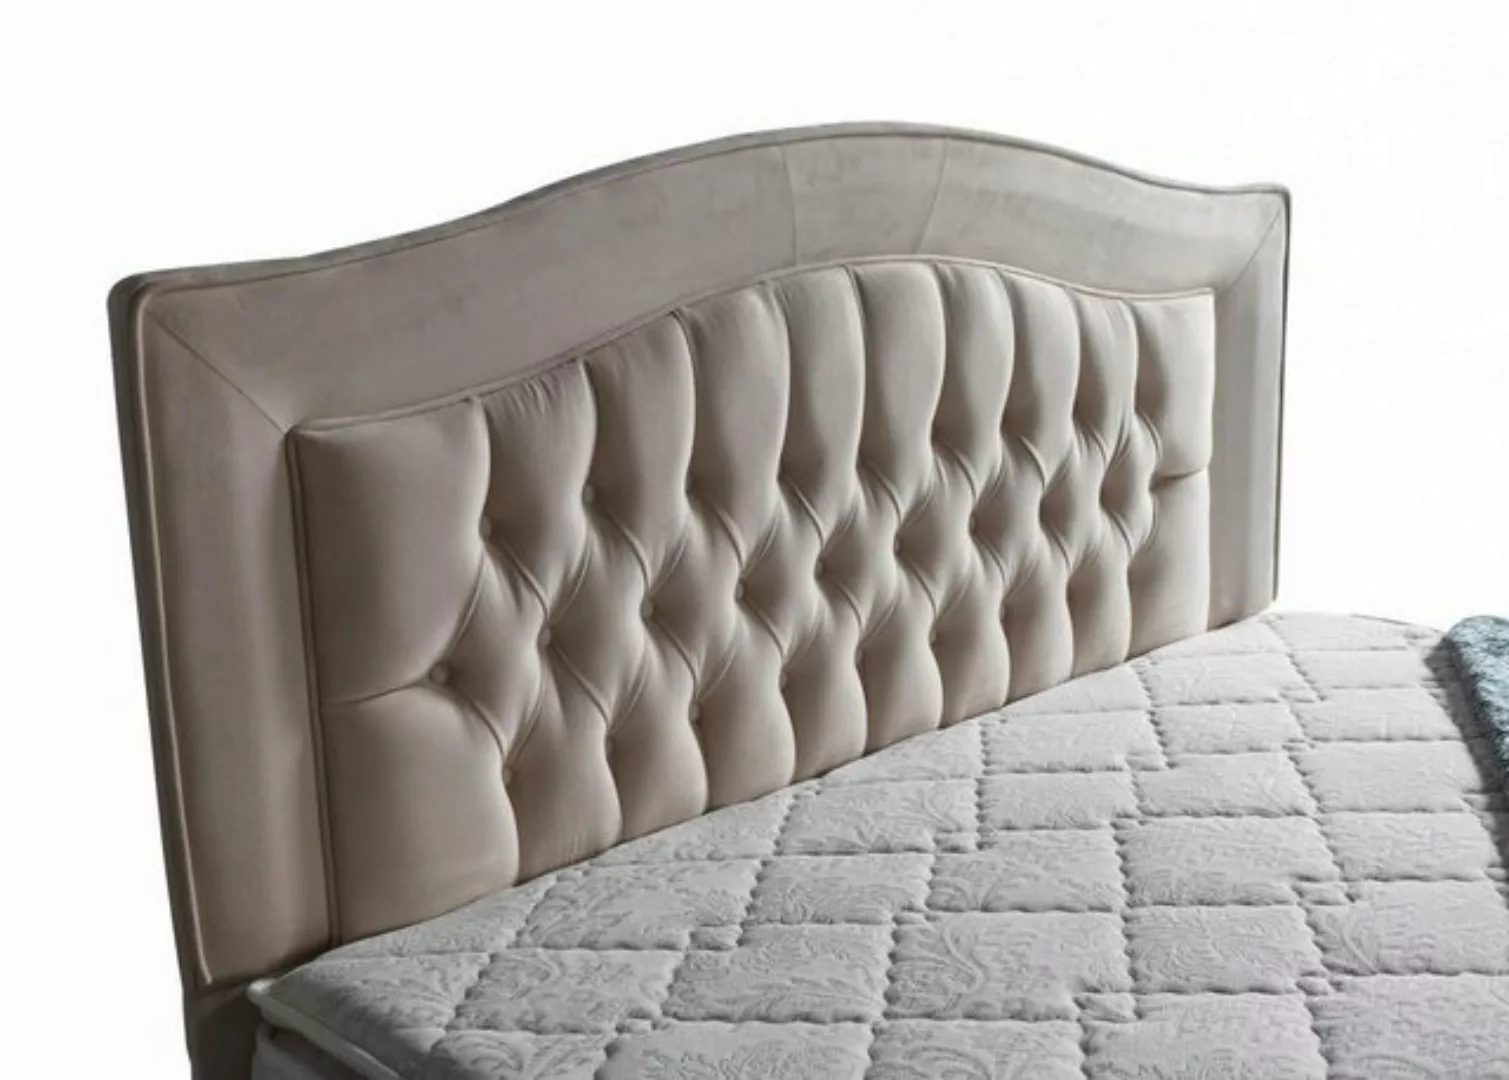 JVmoebel Bett Bett Design Betten Luxus Beige Polster Schlafzimmer Möbel Sil günstig online kaufen